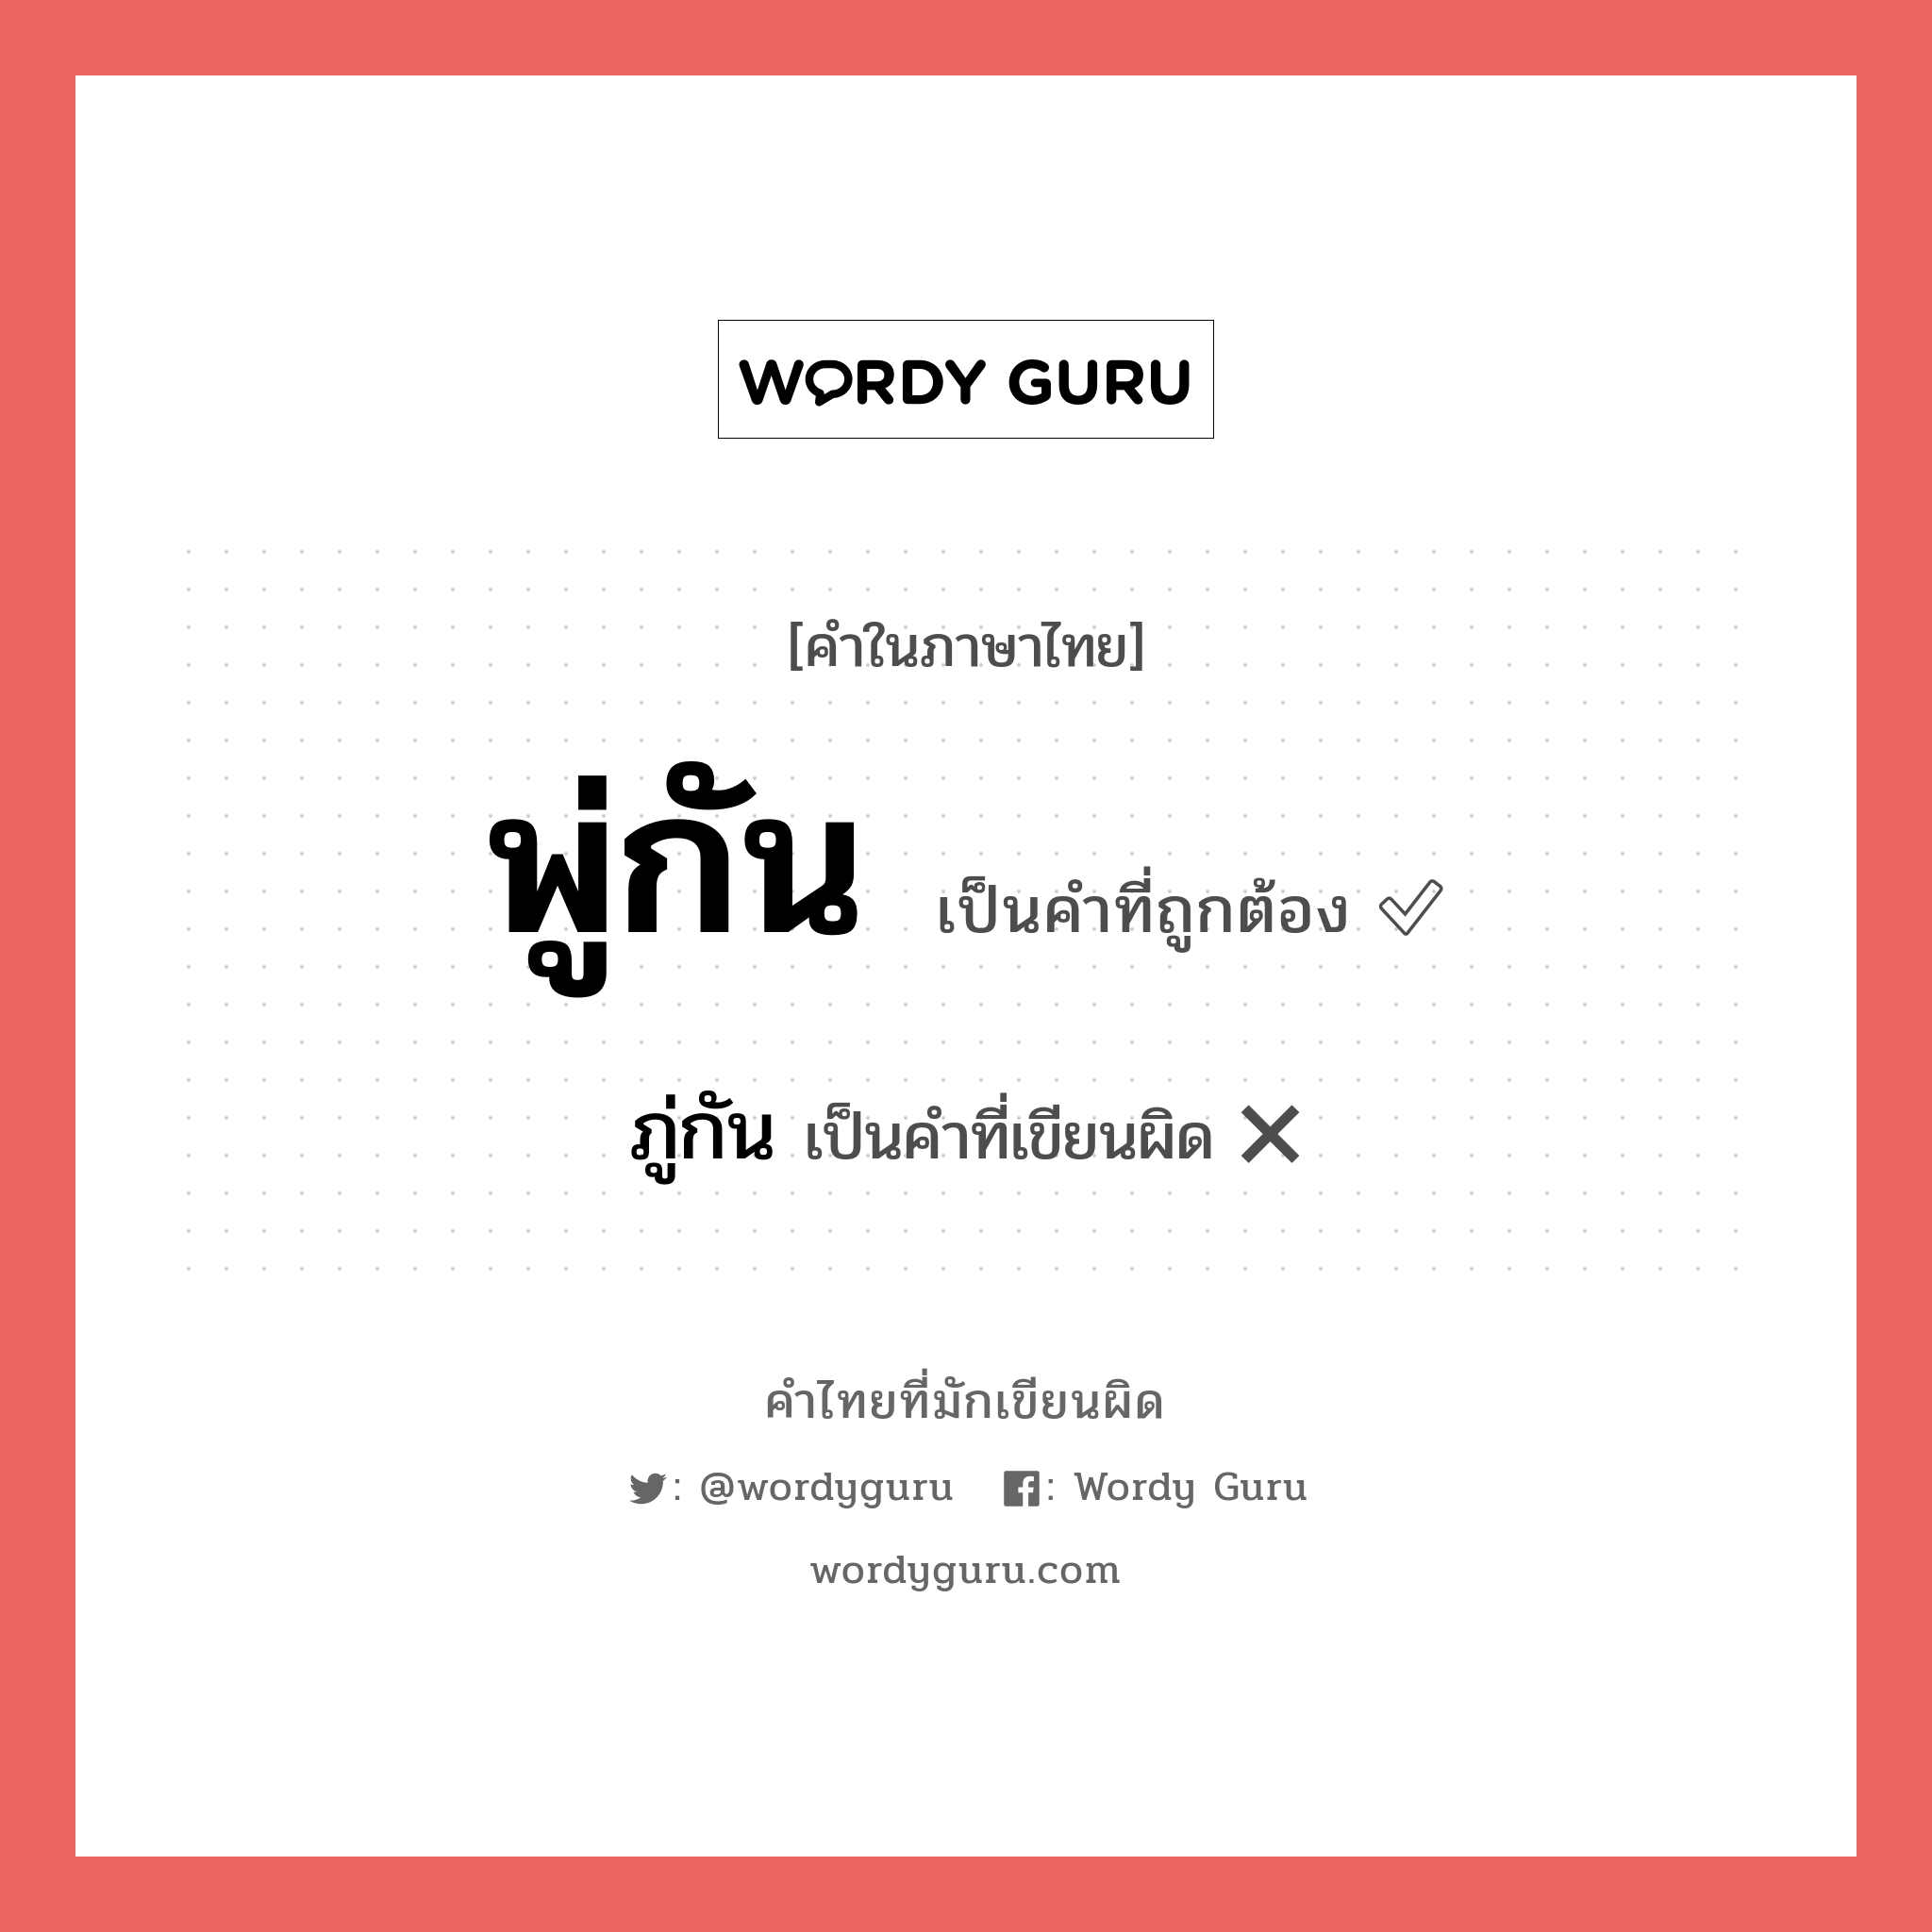 พู่กัน หรือ ภู่กัน คำไหนเขียนถูก?, คำในภาษาไทยที่มักเขียนผิด พู่กัน คำที่ผิด ❌ ภู่กัน